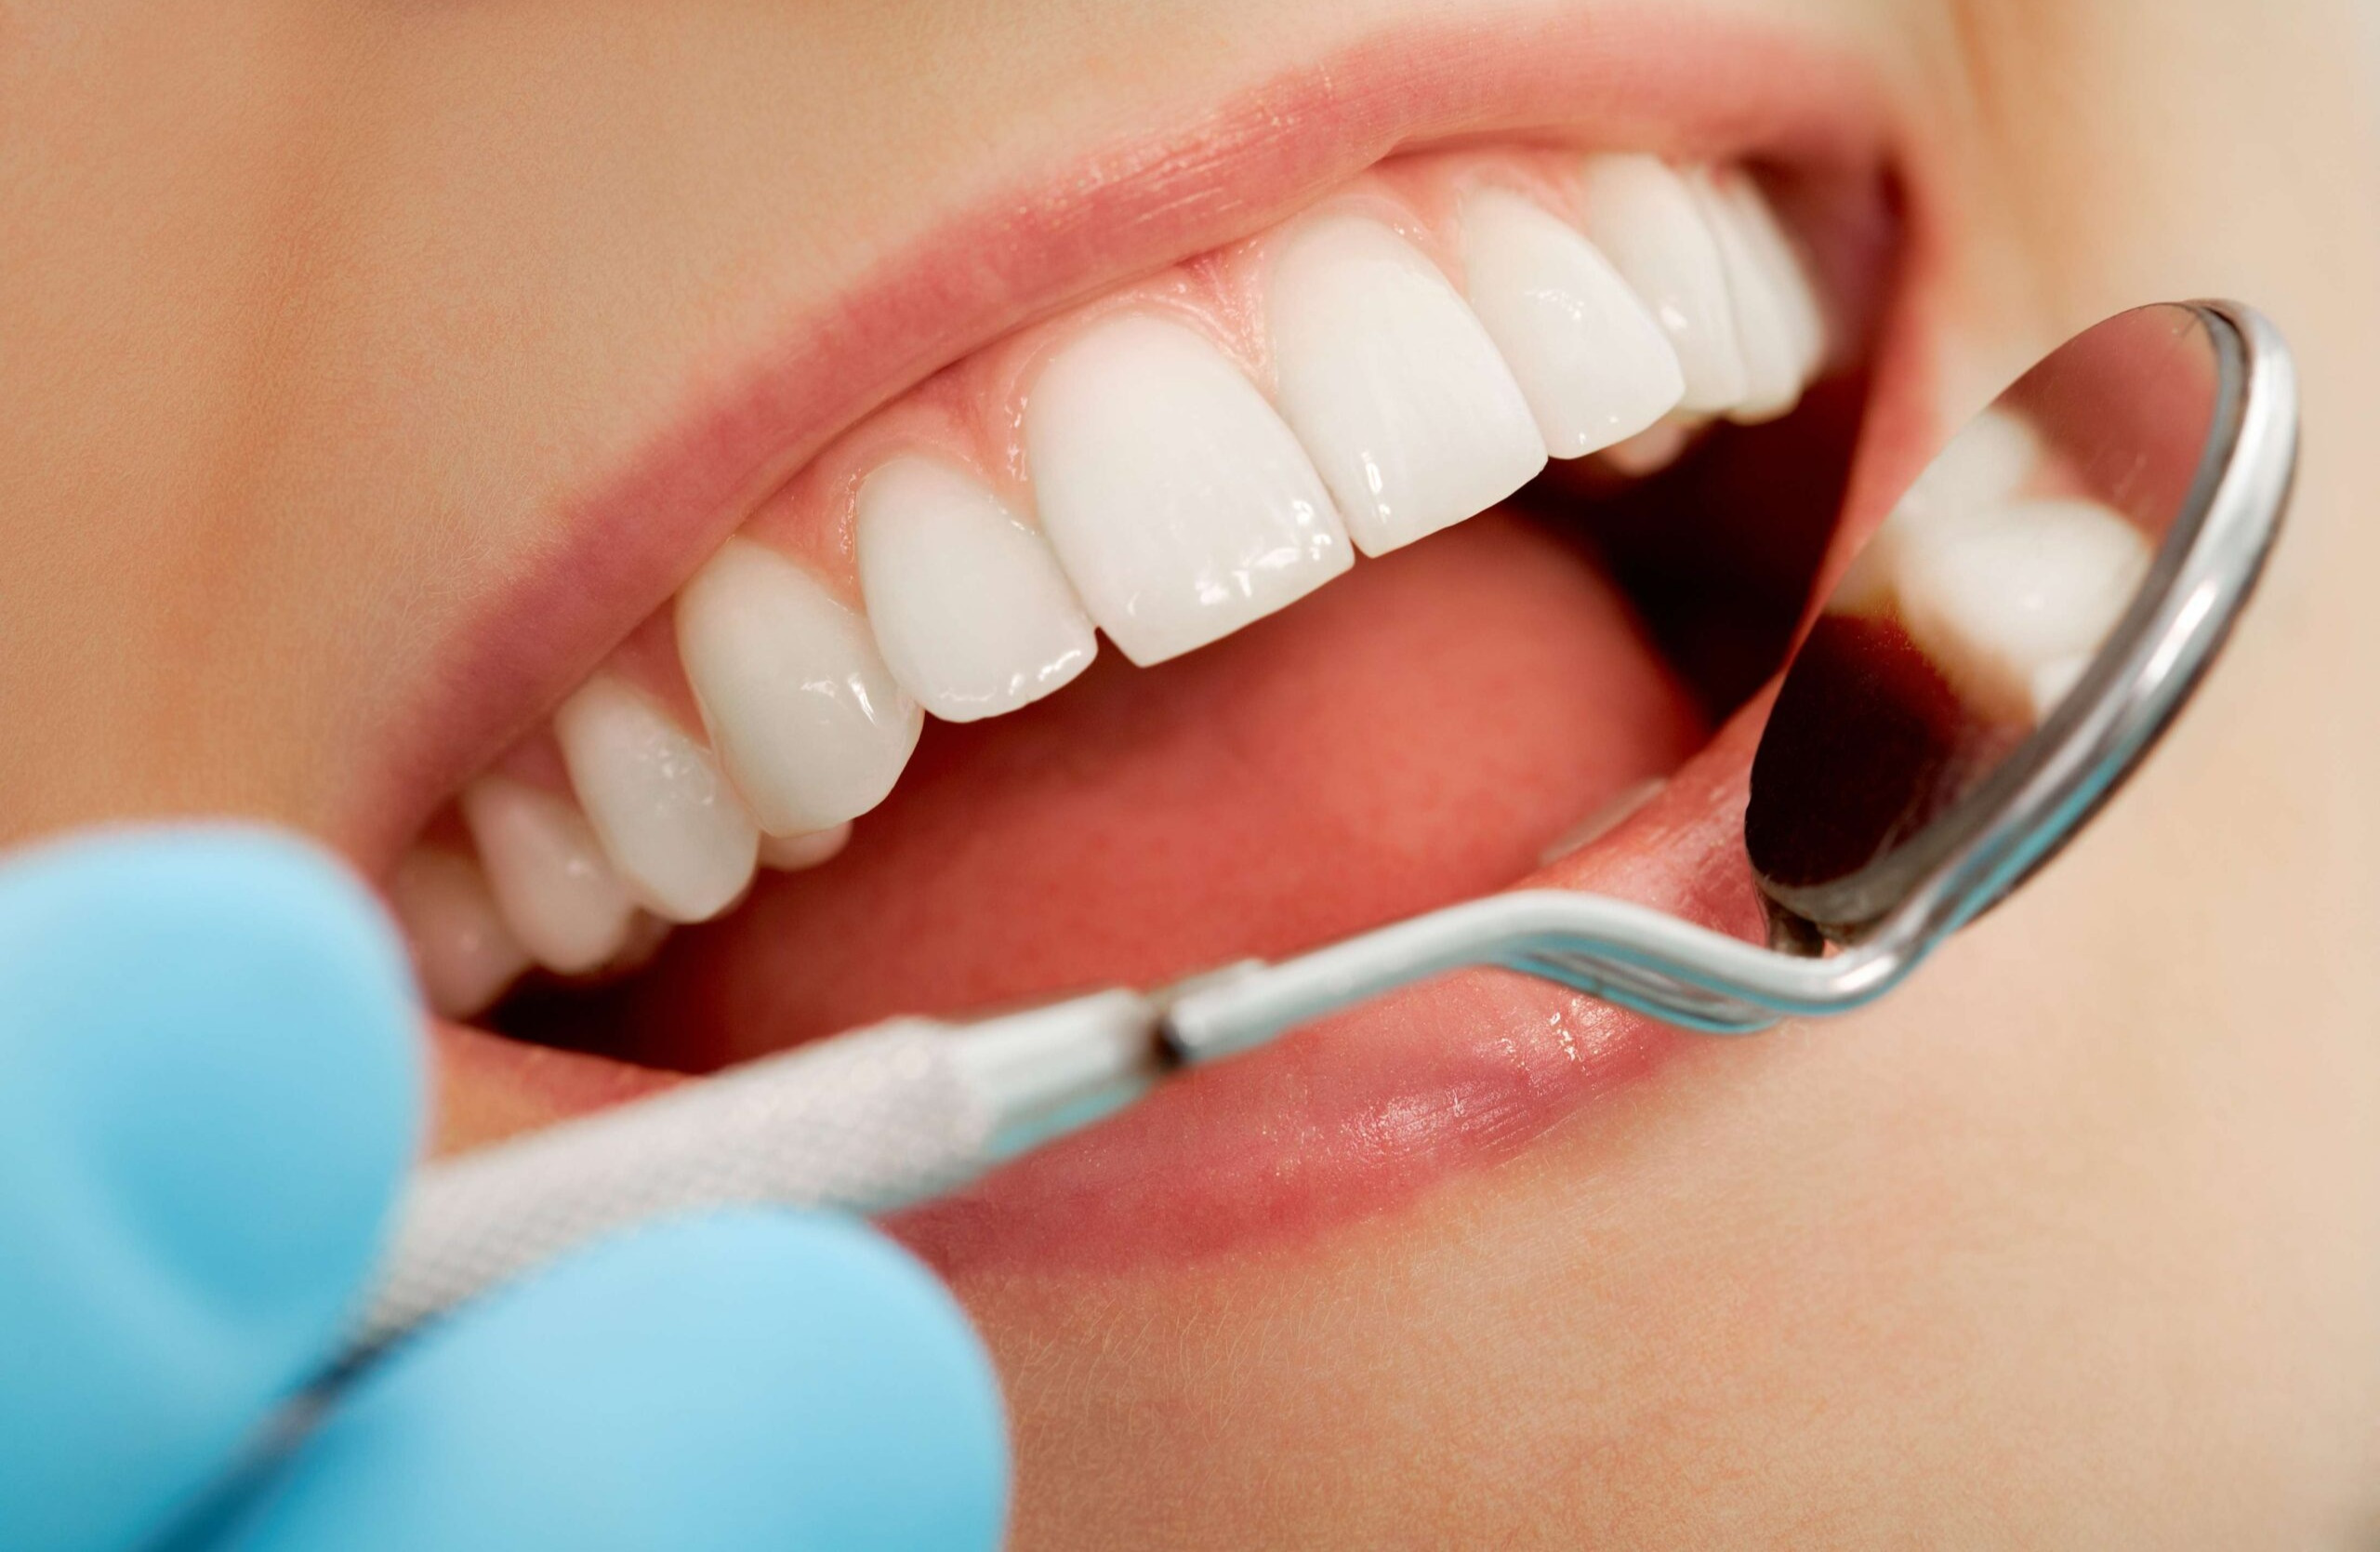 دندانپزشکی - از بین بردن بوی بد دهان